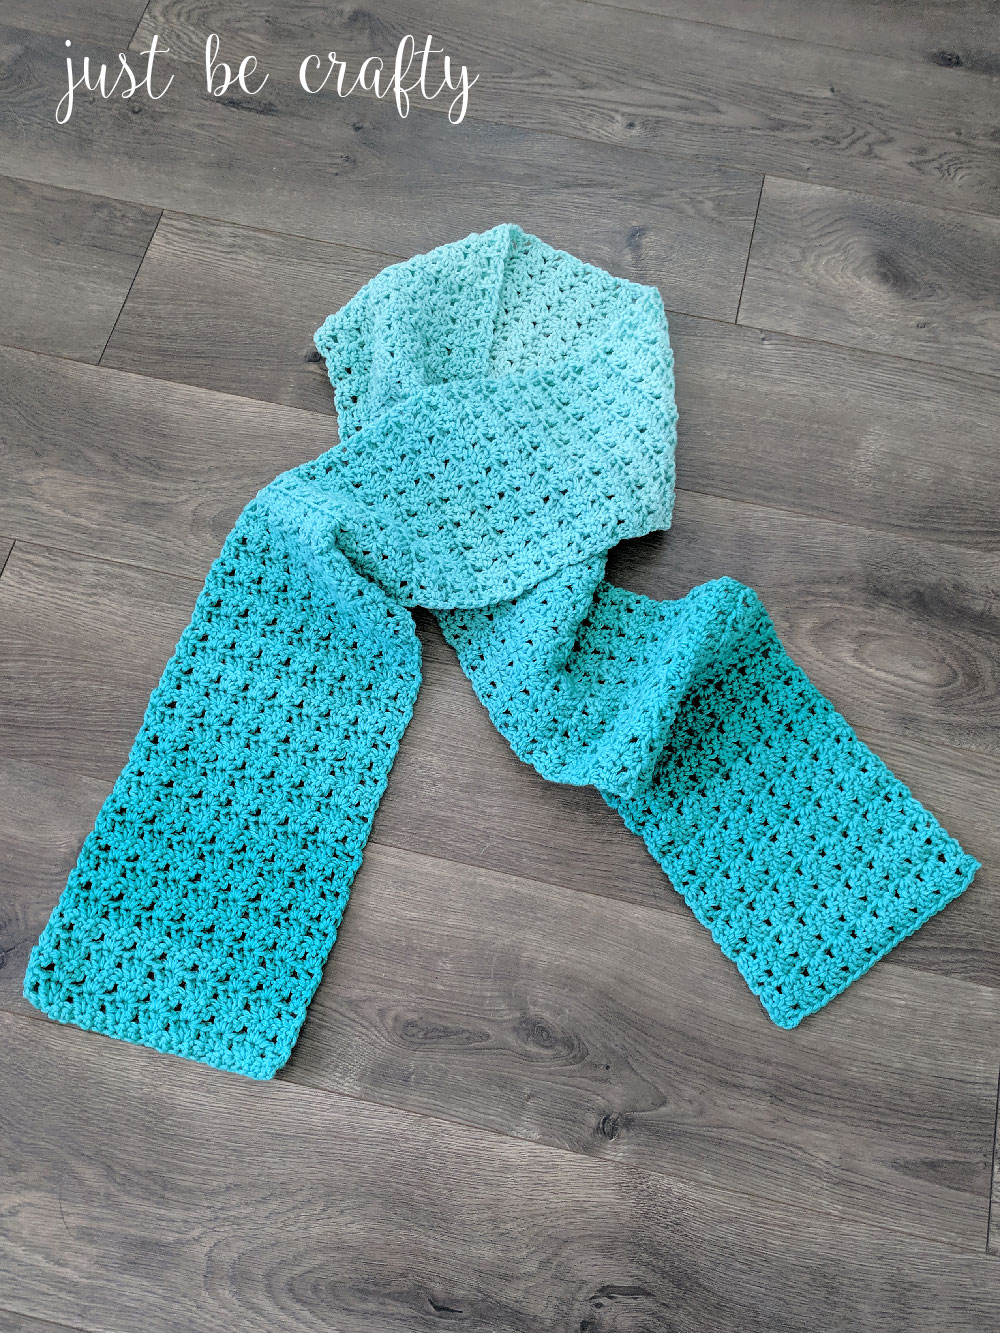 Green Meadows Crochet Scarf Pattern | Free Crochet Pattern by Just Be Crafty